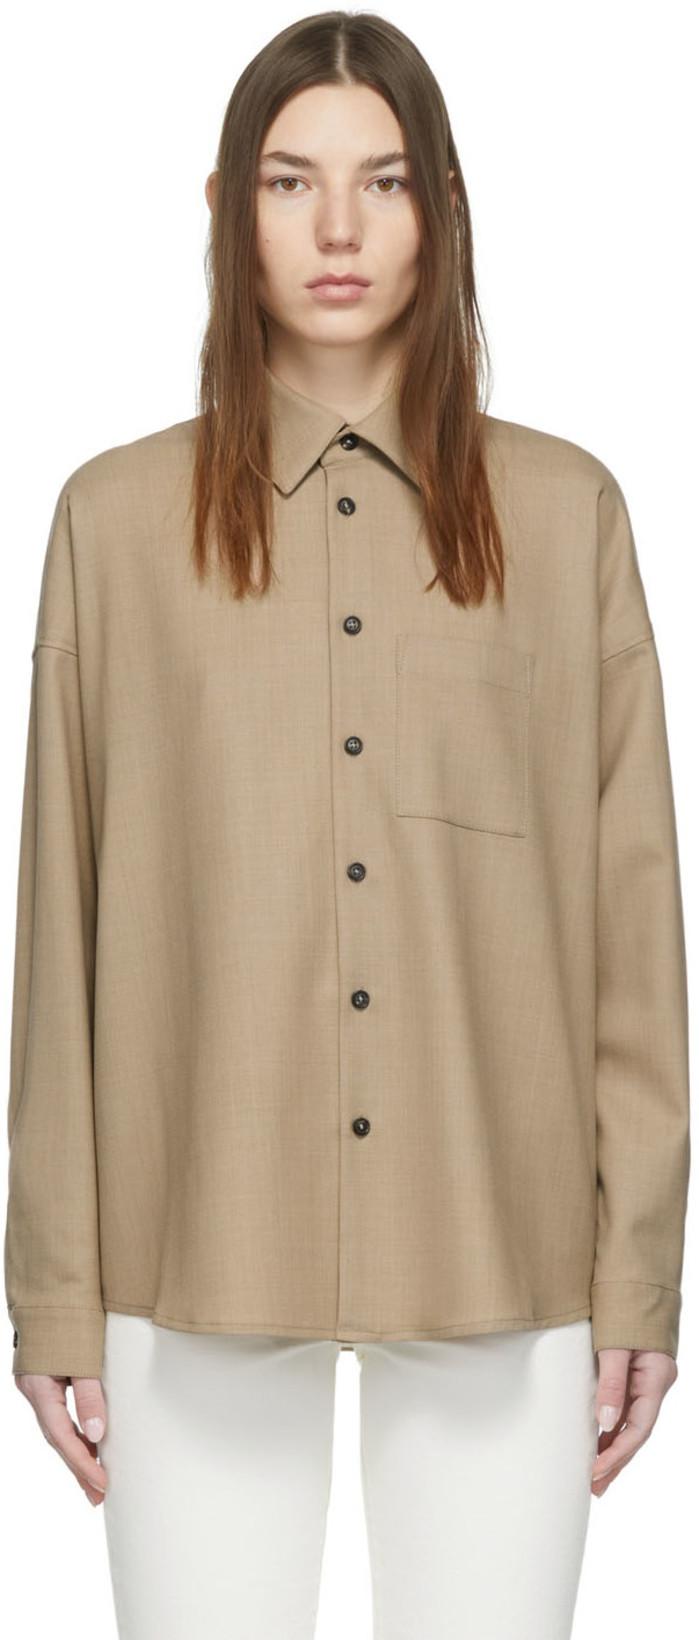 Brown Uniform Shirt by 6397